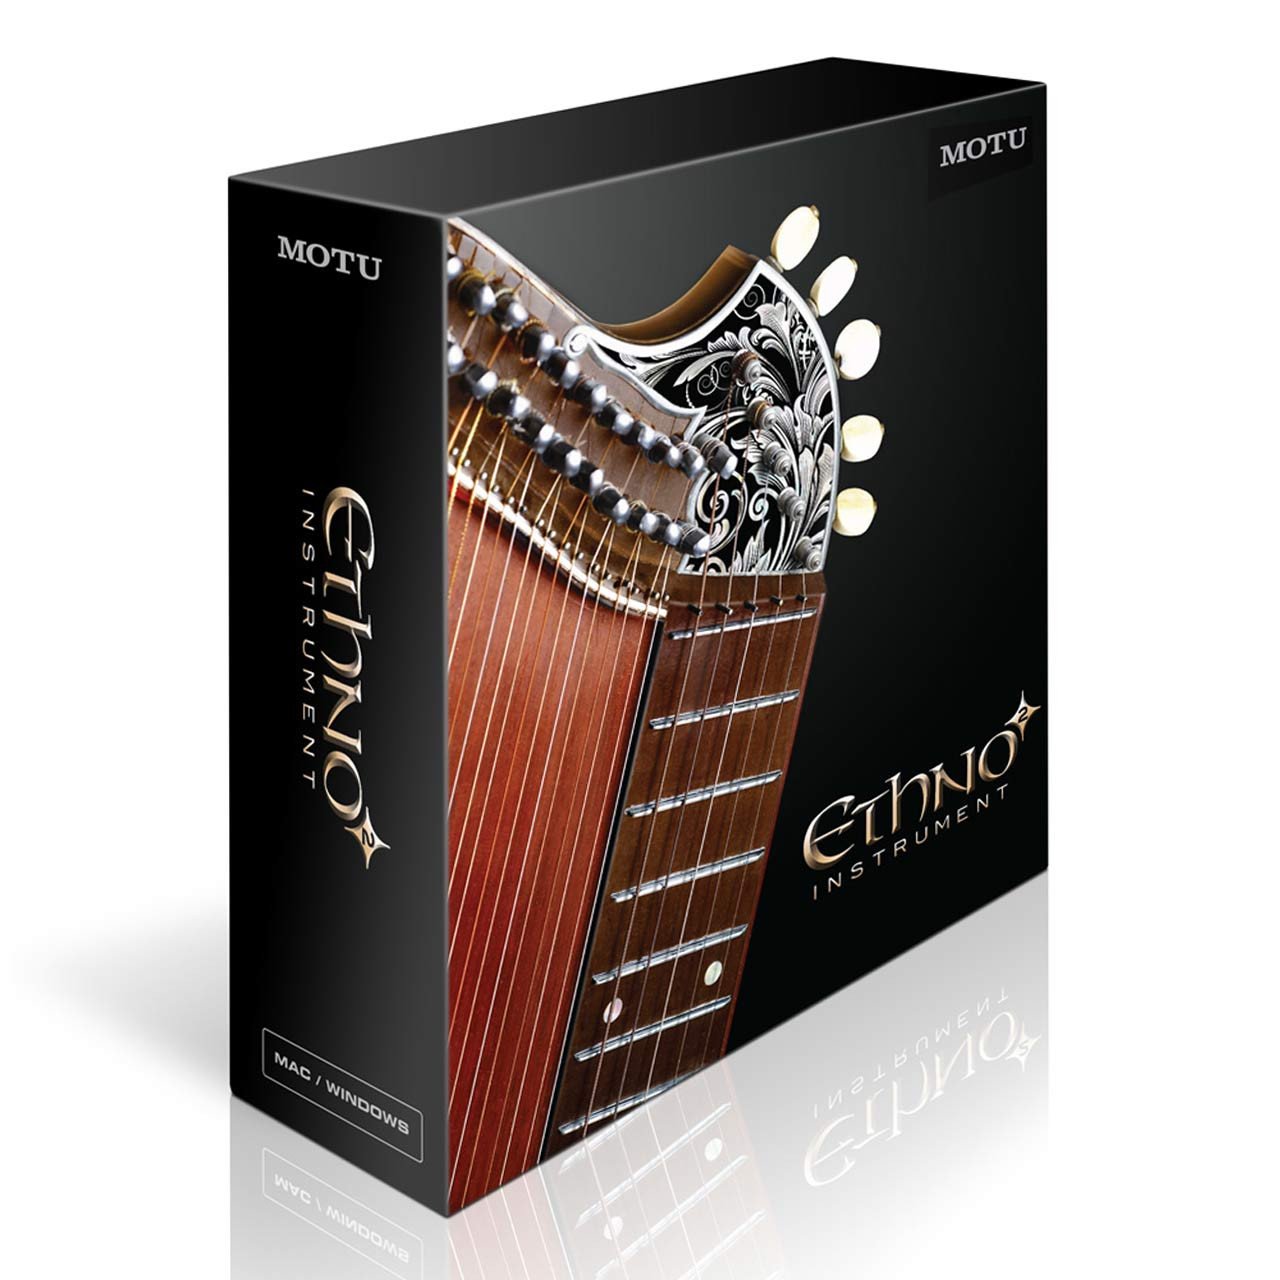 Software Instruments - MOTU Ethno Instrument 2 - World Music Software Instrument